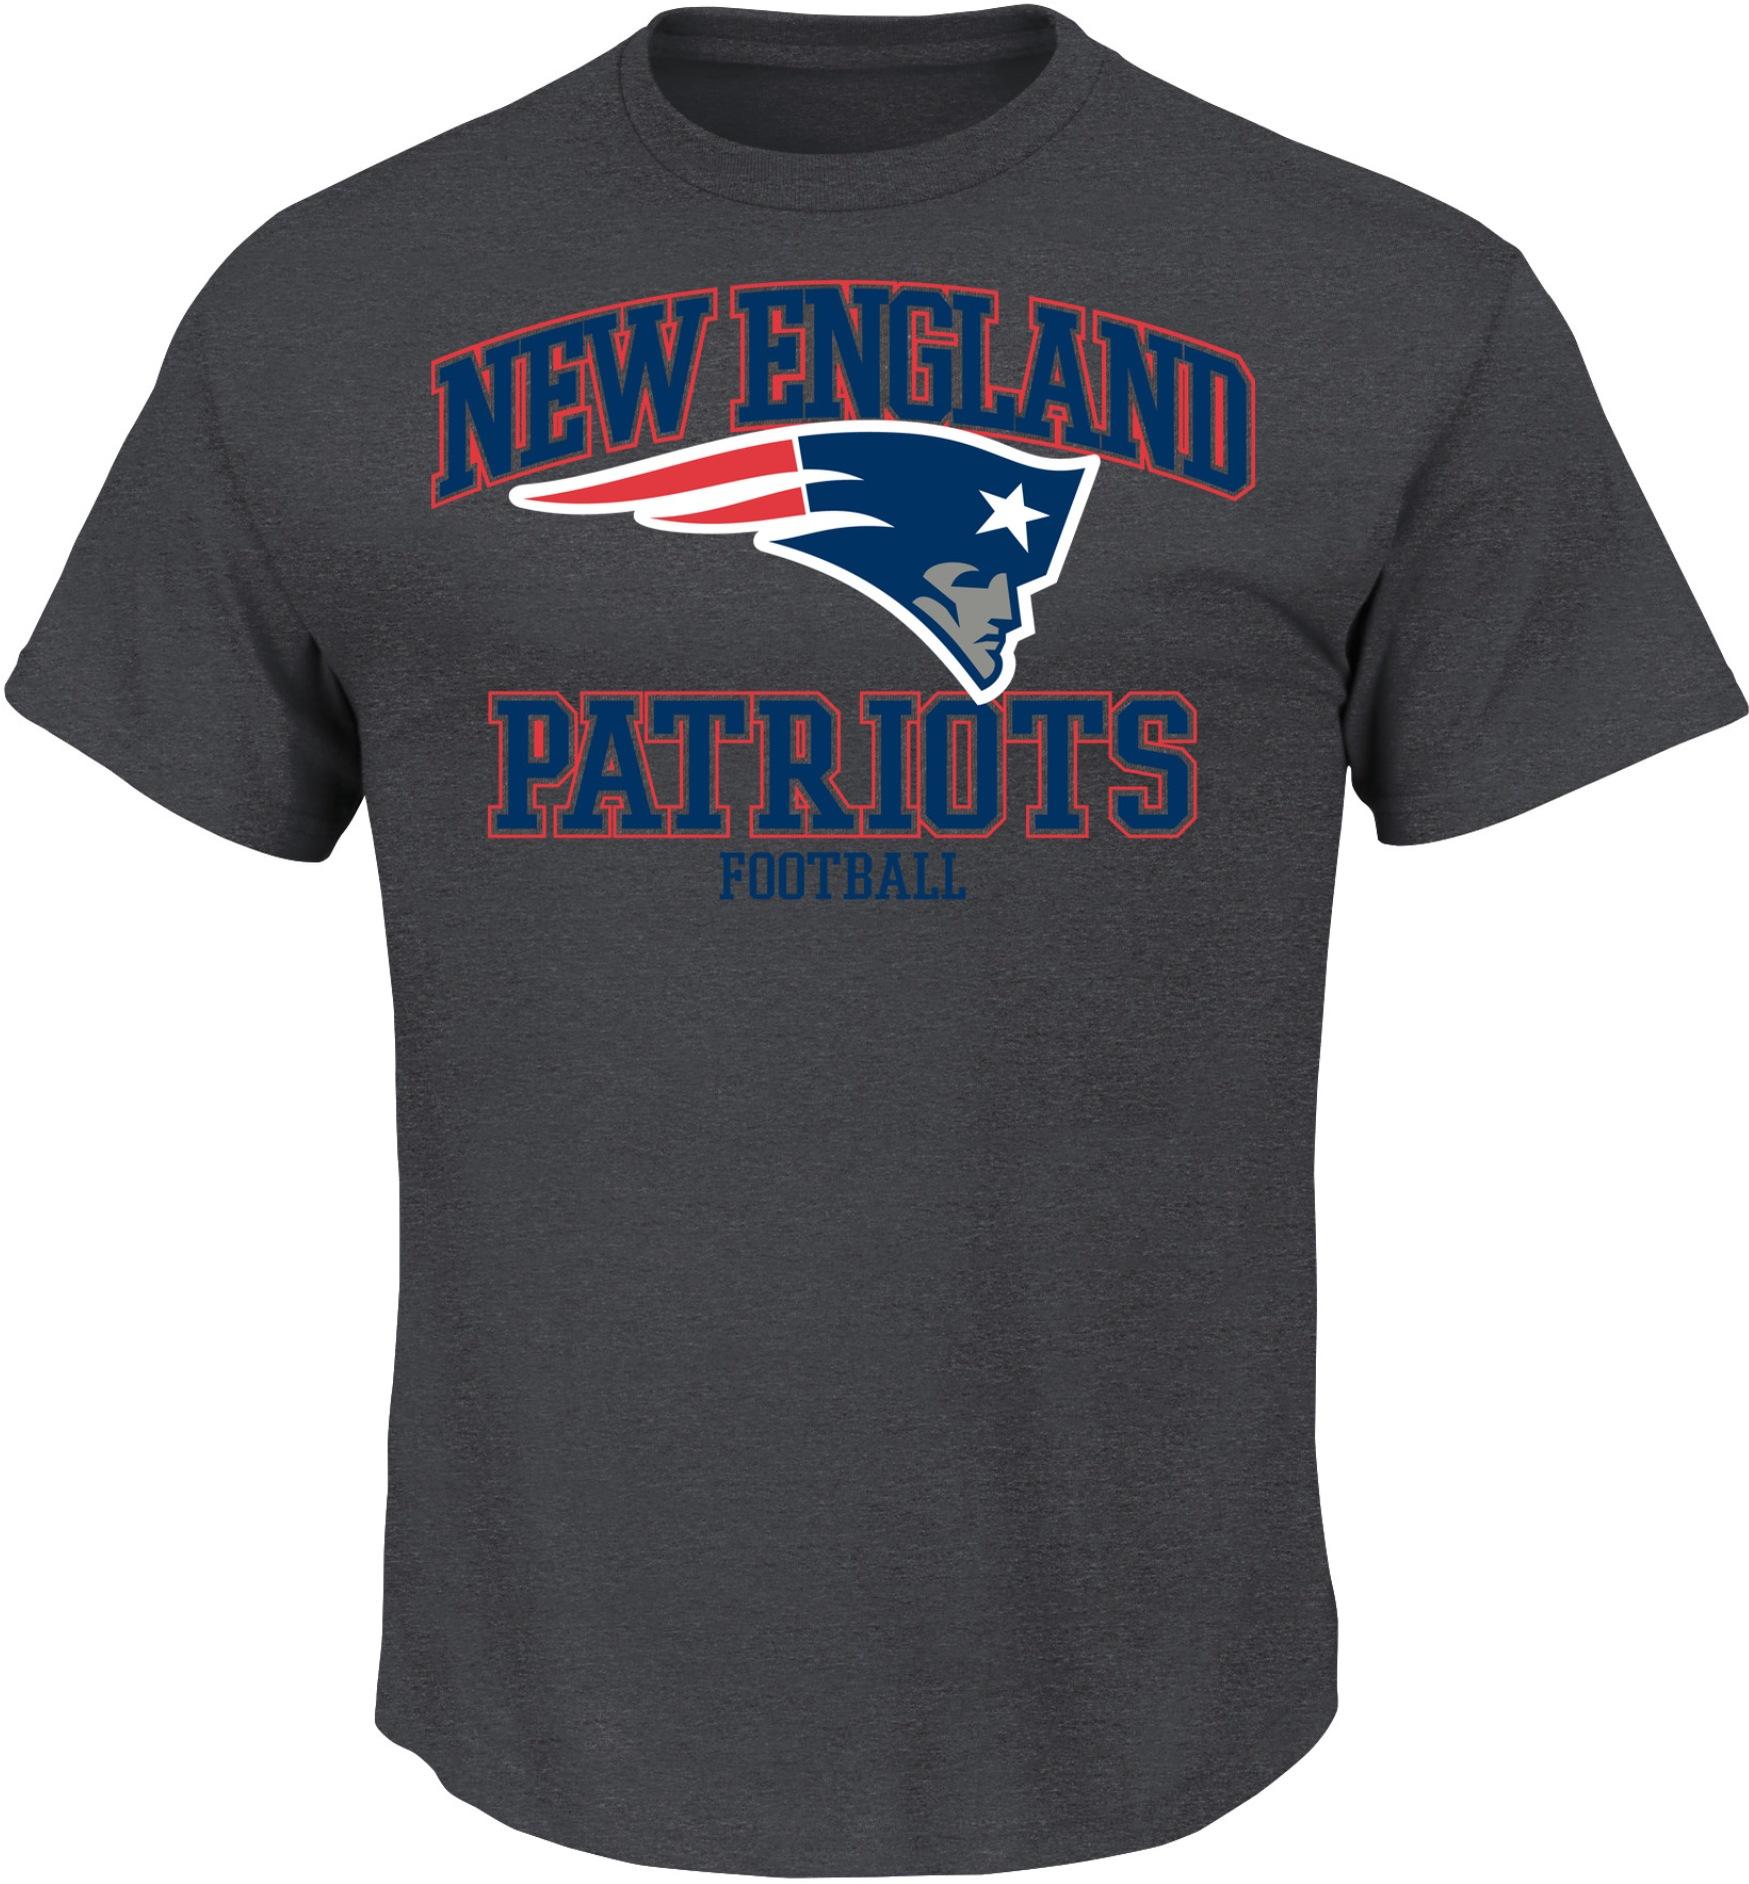 NFL Men's T-Shirt - New England Patriots